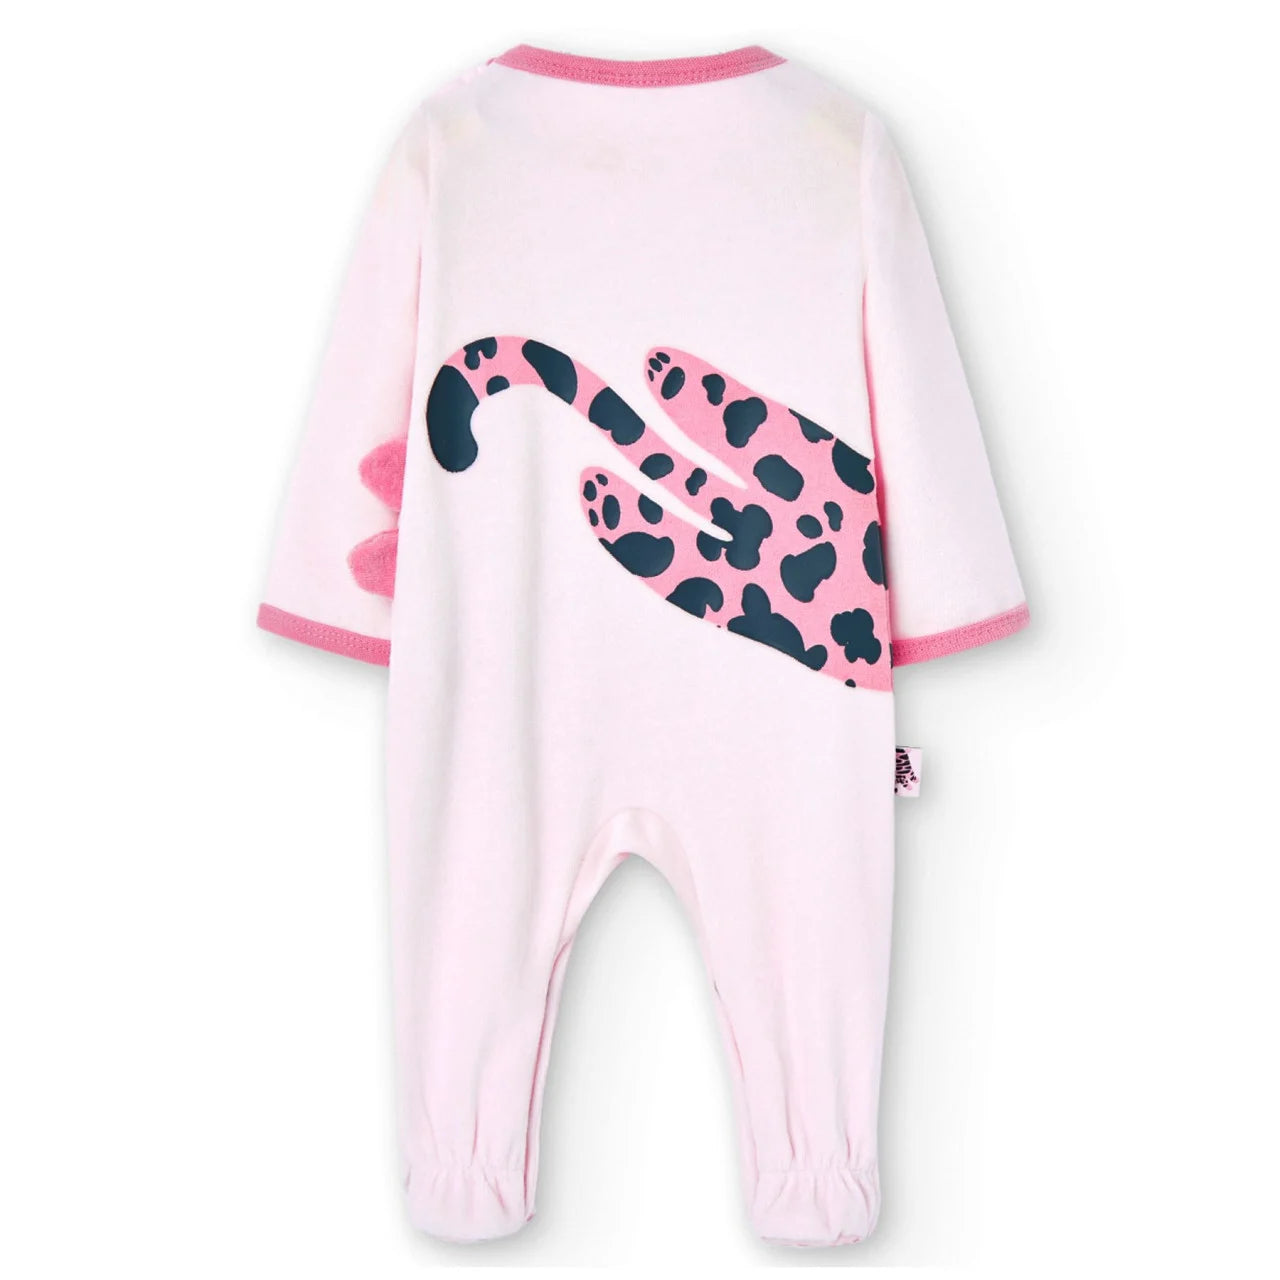 Tute neonato , Tutina ciniglia neonata rosa 3-9 mesi Boboli 107064 - BabyBimbo 0-16, abbigliamento bambini